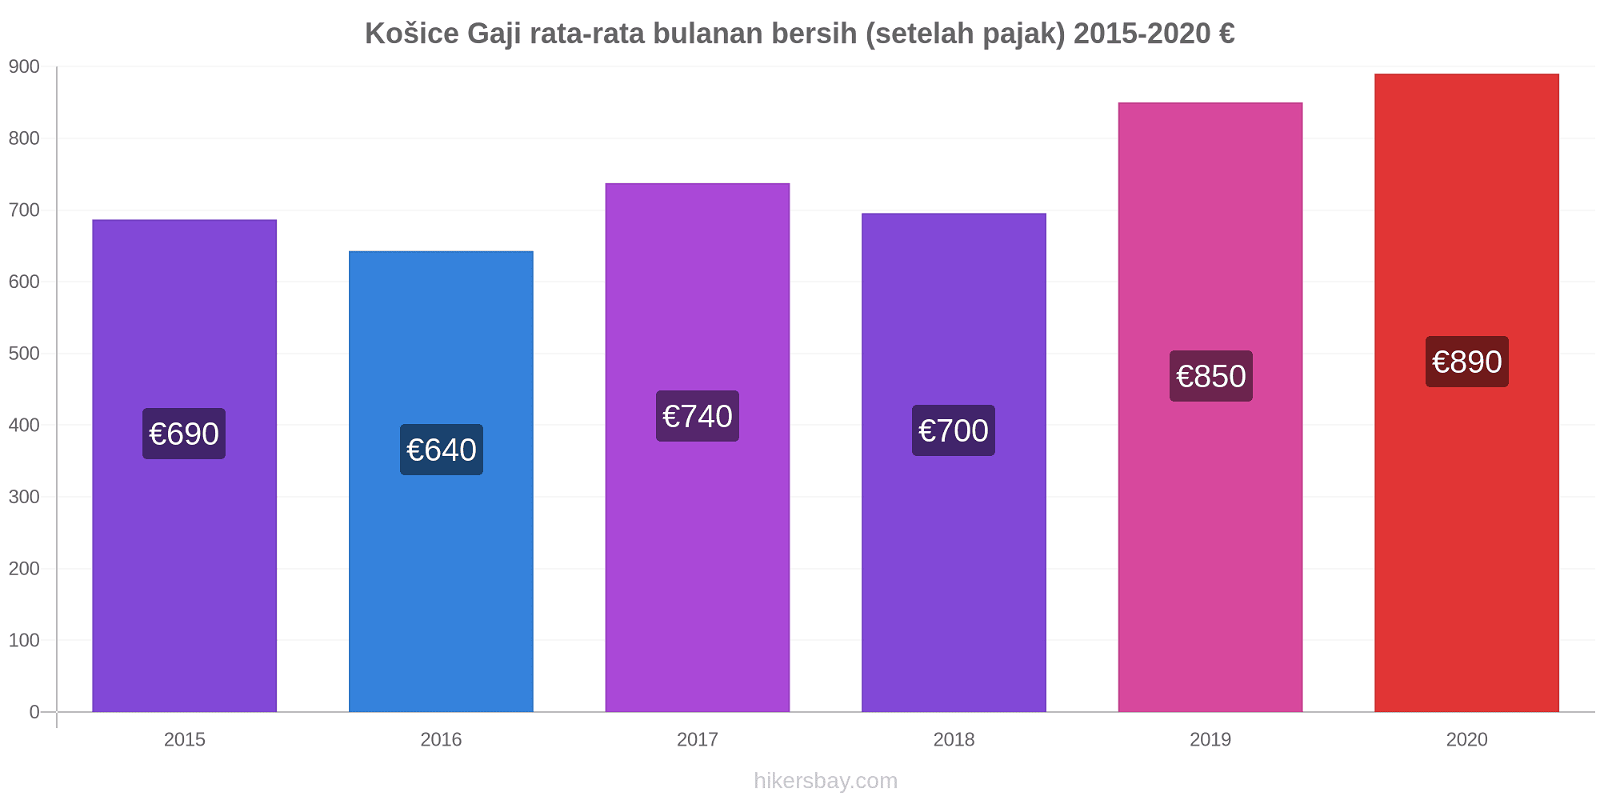 Košice perubahan harga Gaji rata-rata bulanan bersih (setelah pajak) hikersbay.com